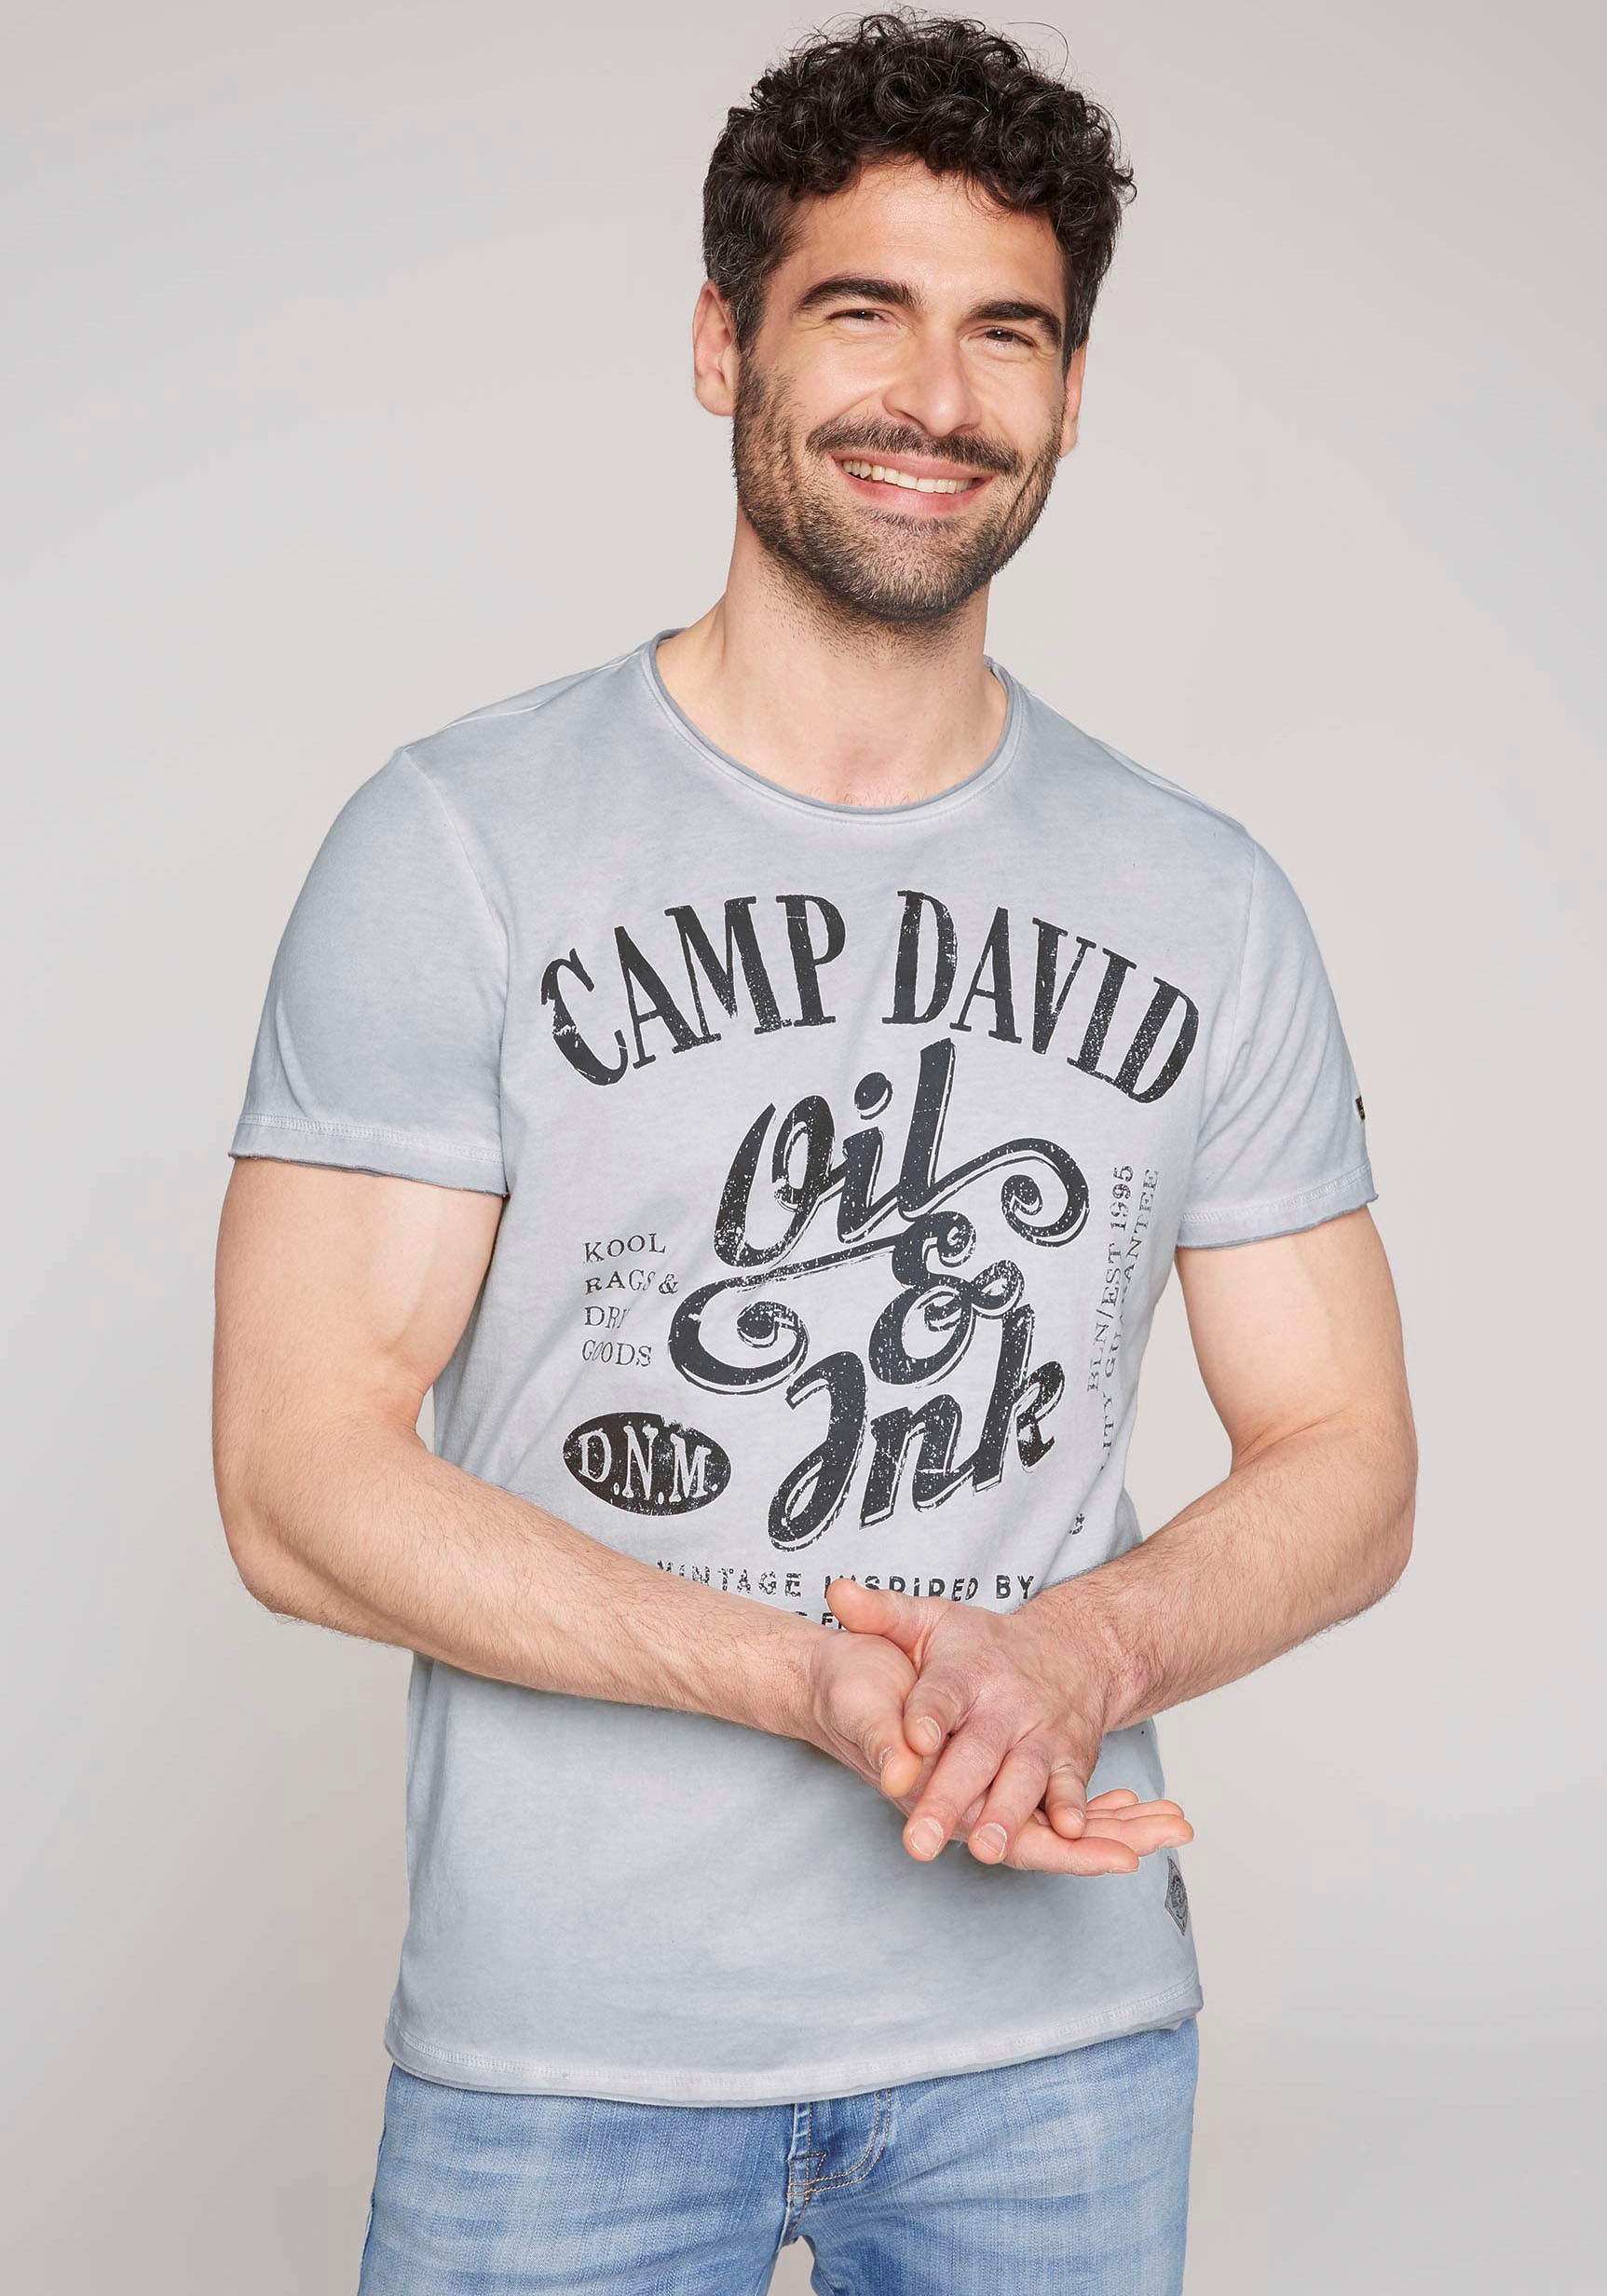 DAVID CAMP T-Shirt